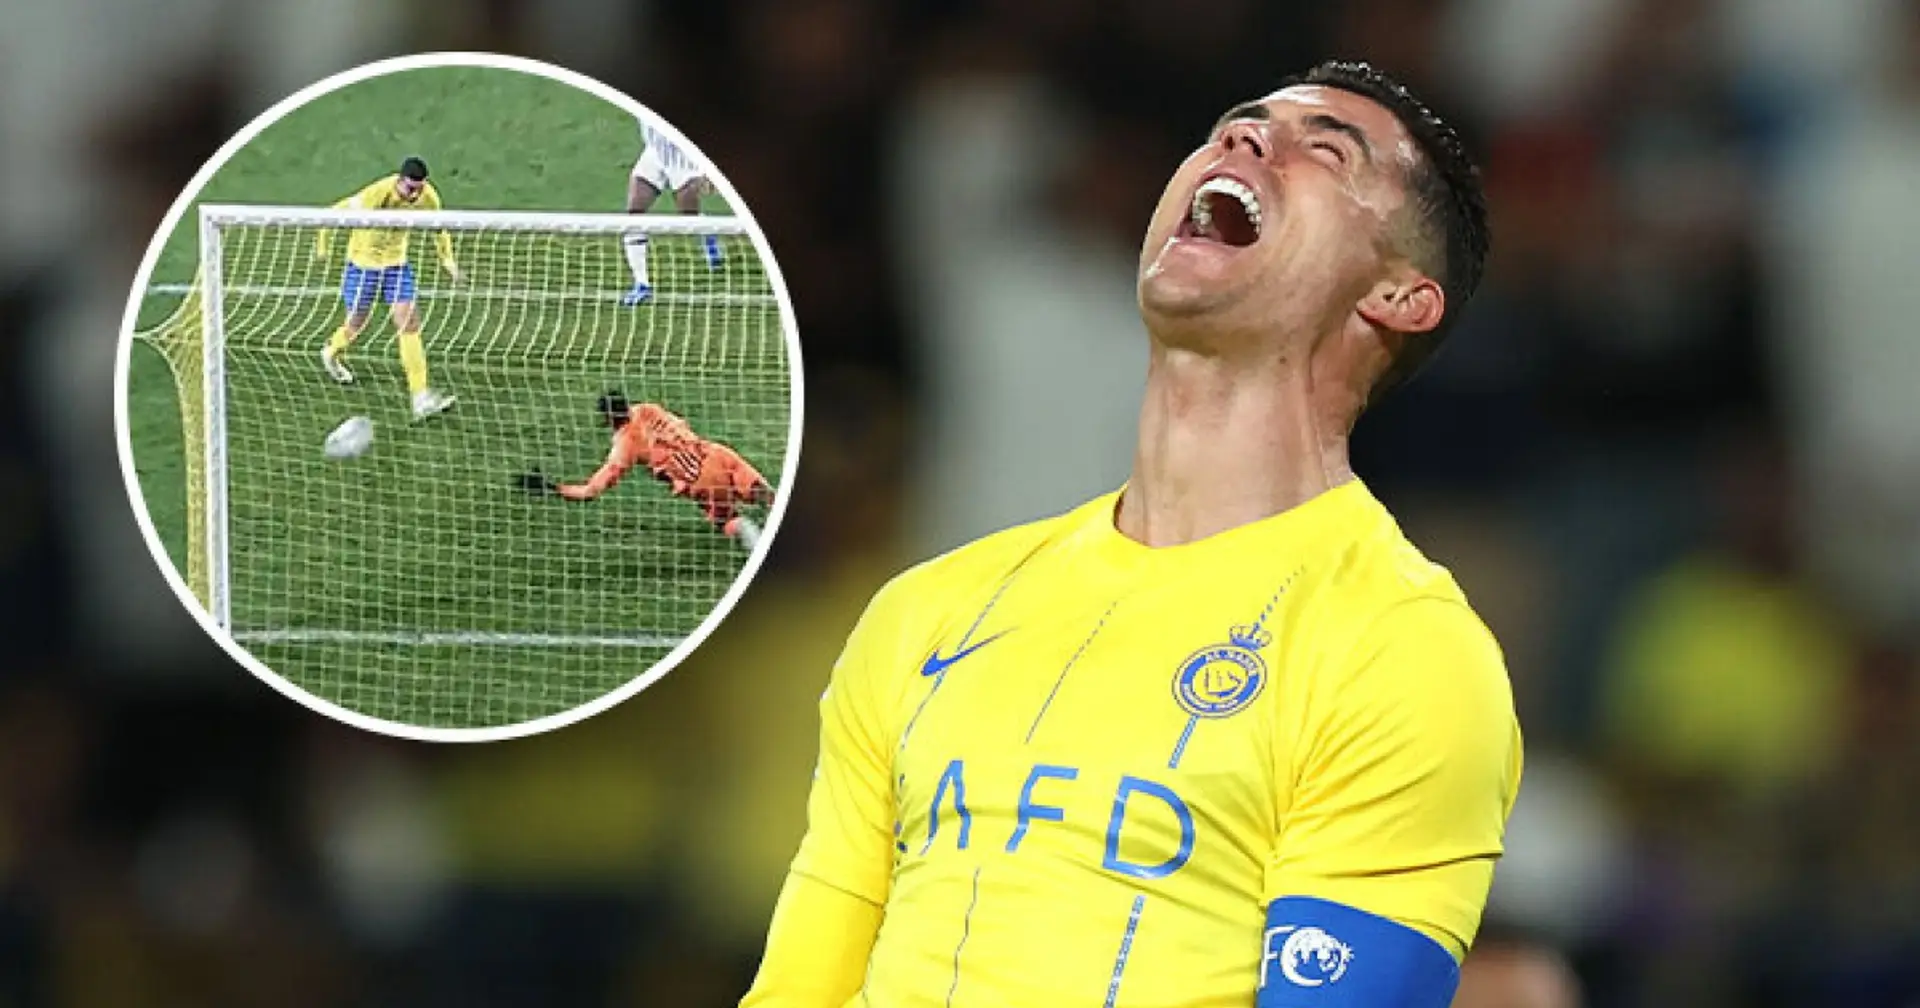 Ronaldo scheiterte aus einem Meter Entfernung vor dem leeren Tor und schied aus der Asian Champions League aus - Albtraumabend trotz Elfmetertor 